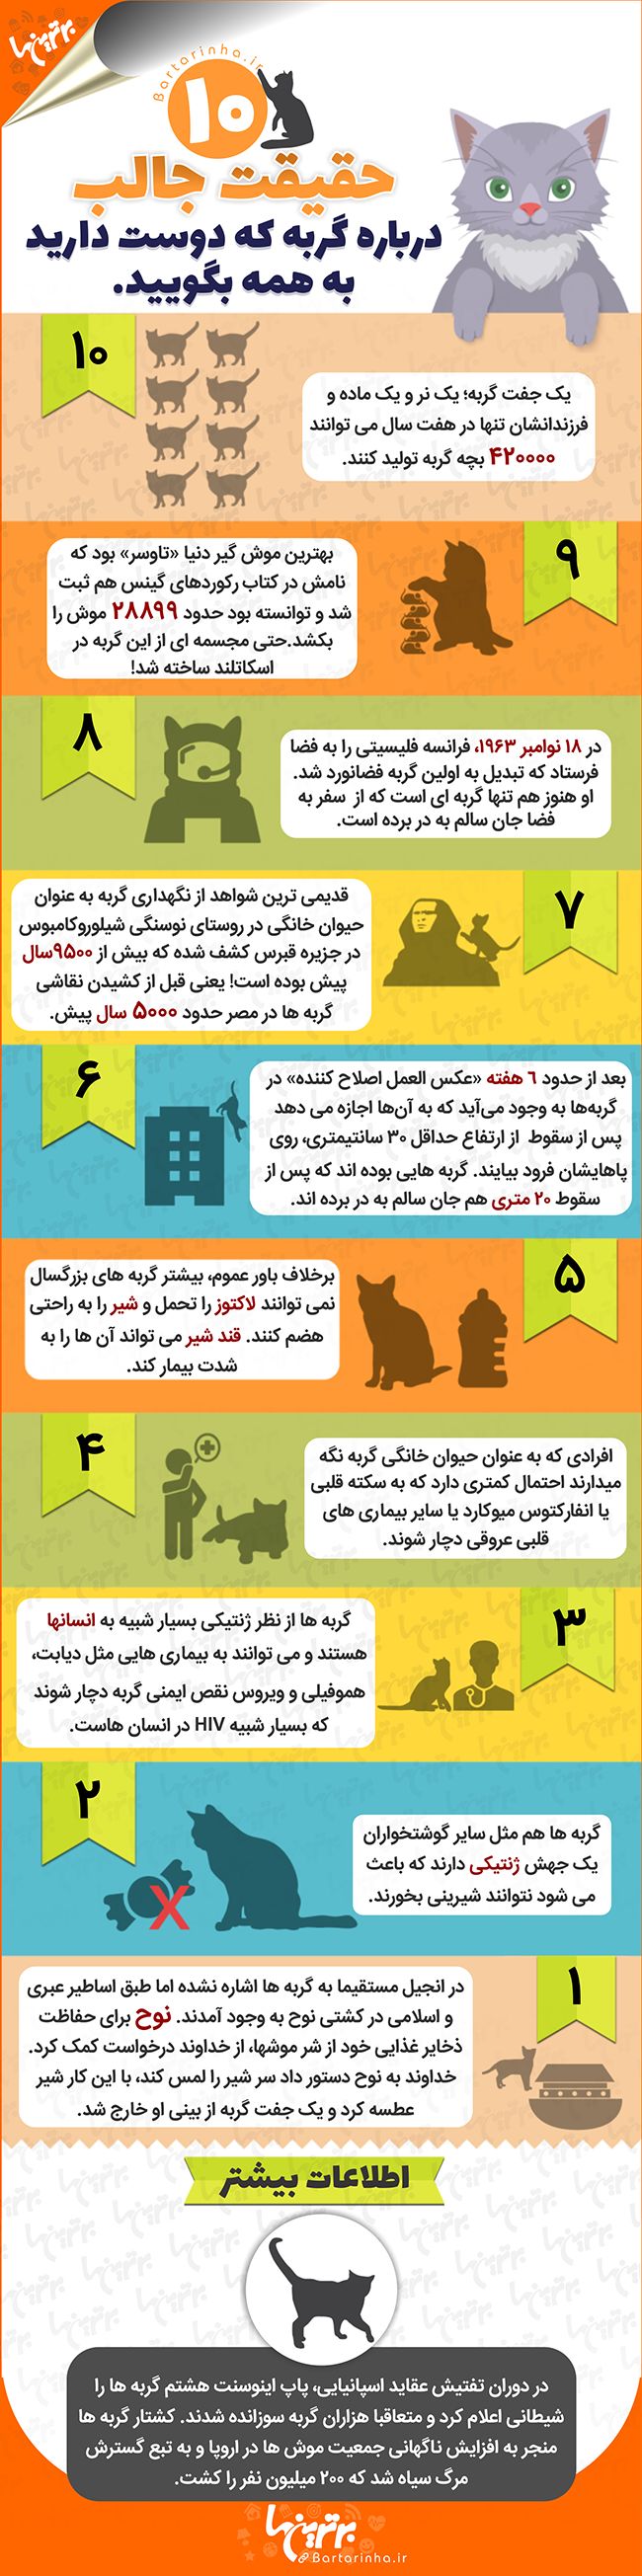 اینفوگرافی؛ 10 حقیقت جالب درباره گربه ها